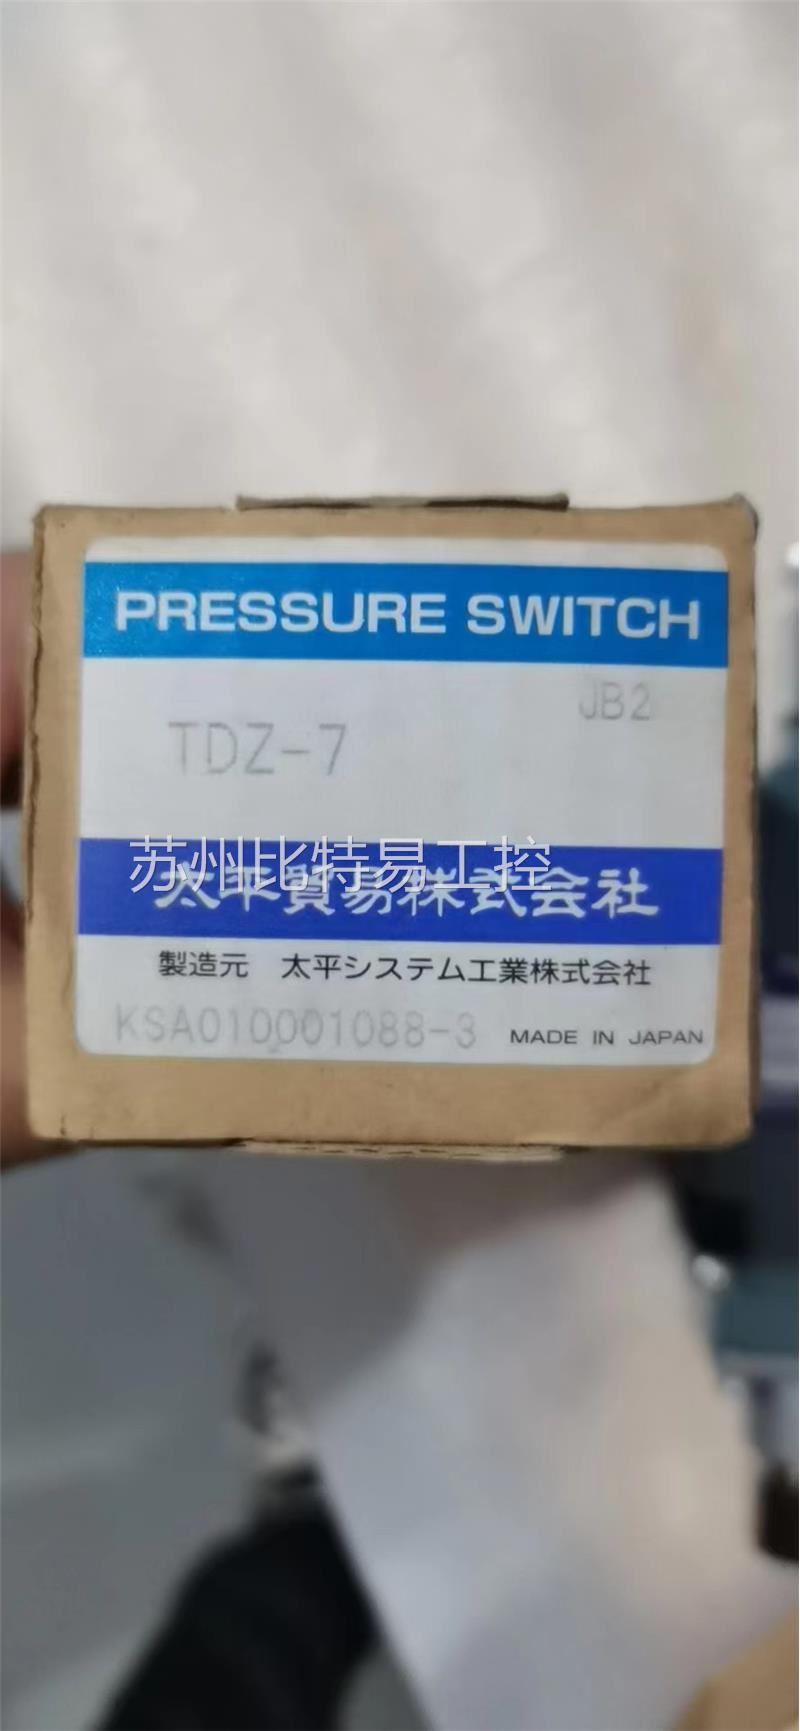 全新现货 TDZ-7 压力开关 日本太平TAIHEI BOEKI原装正品带盒